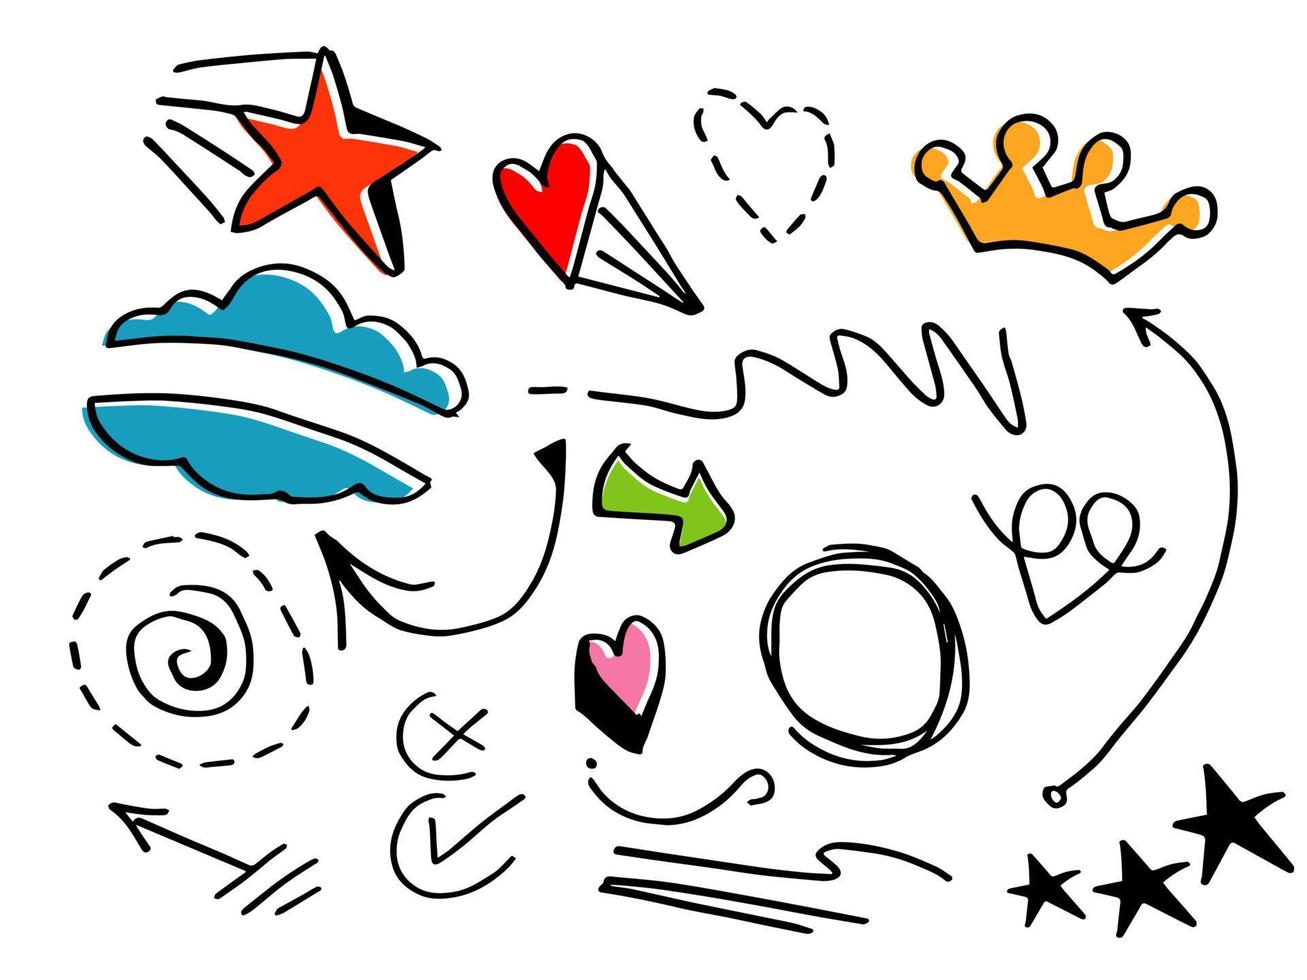 coleção de mão desenhada de vetor de elemento de design doodle. swishes encaracolados, swoops, redemoinho, seta, coração, amor, coroa, estrela e elemento de ênfase com a cor. usar para design de conceito